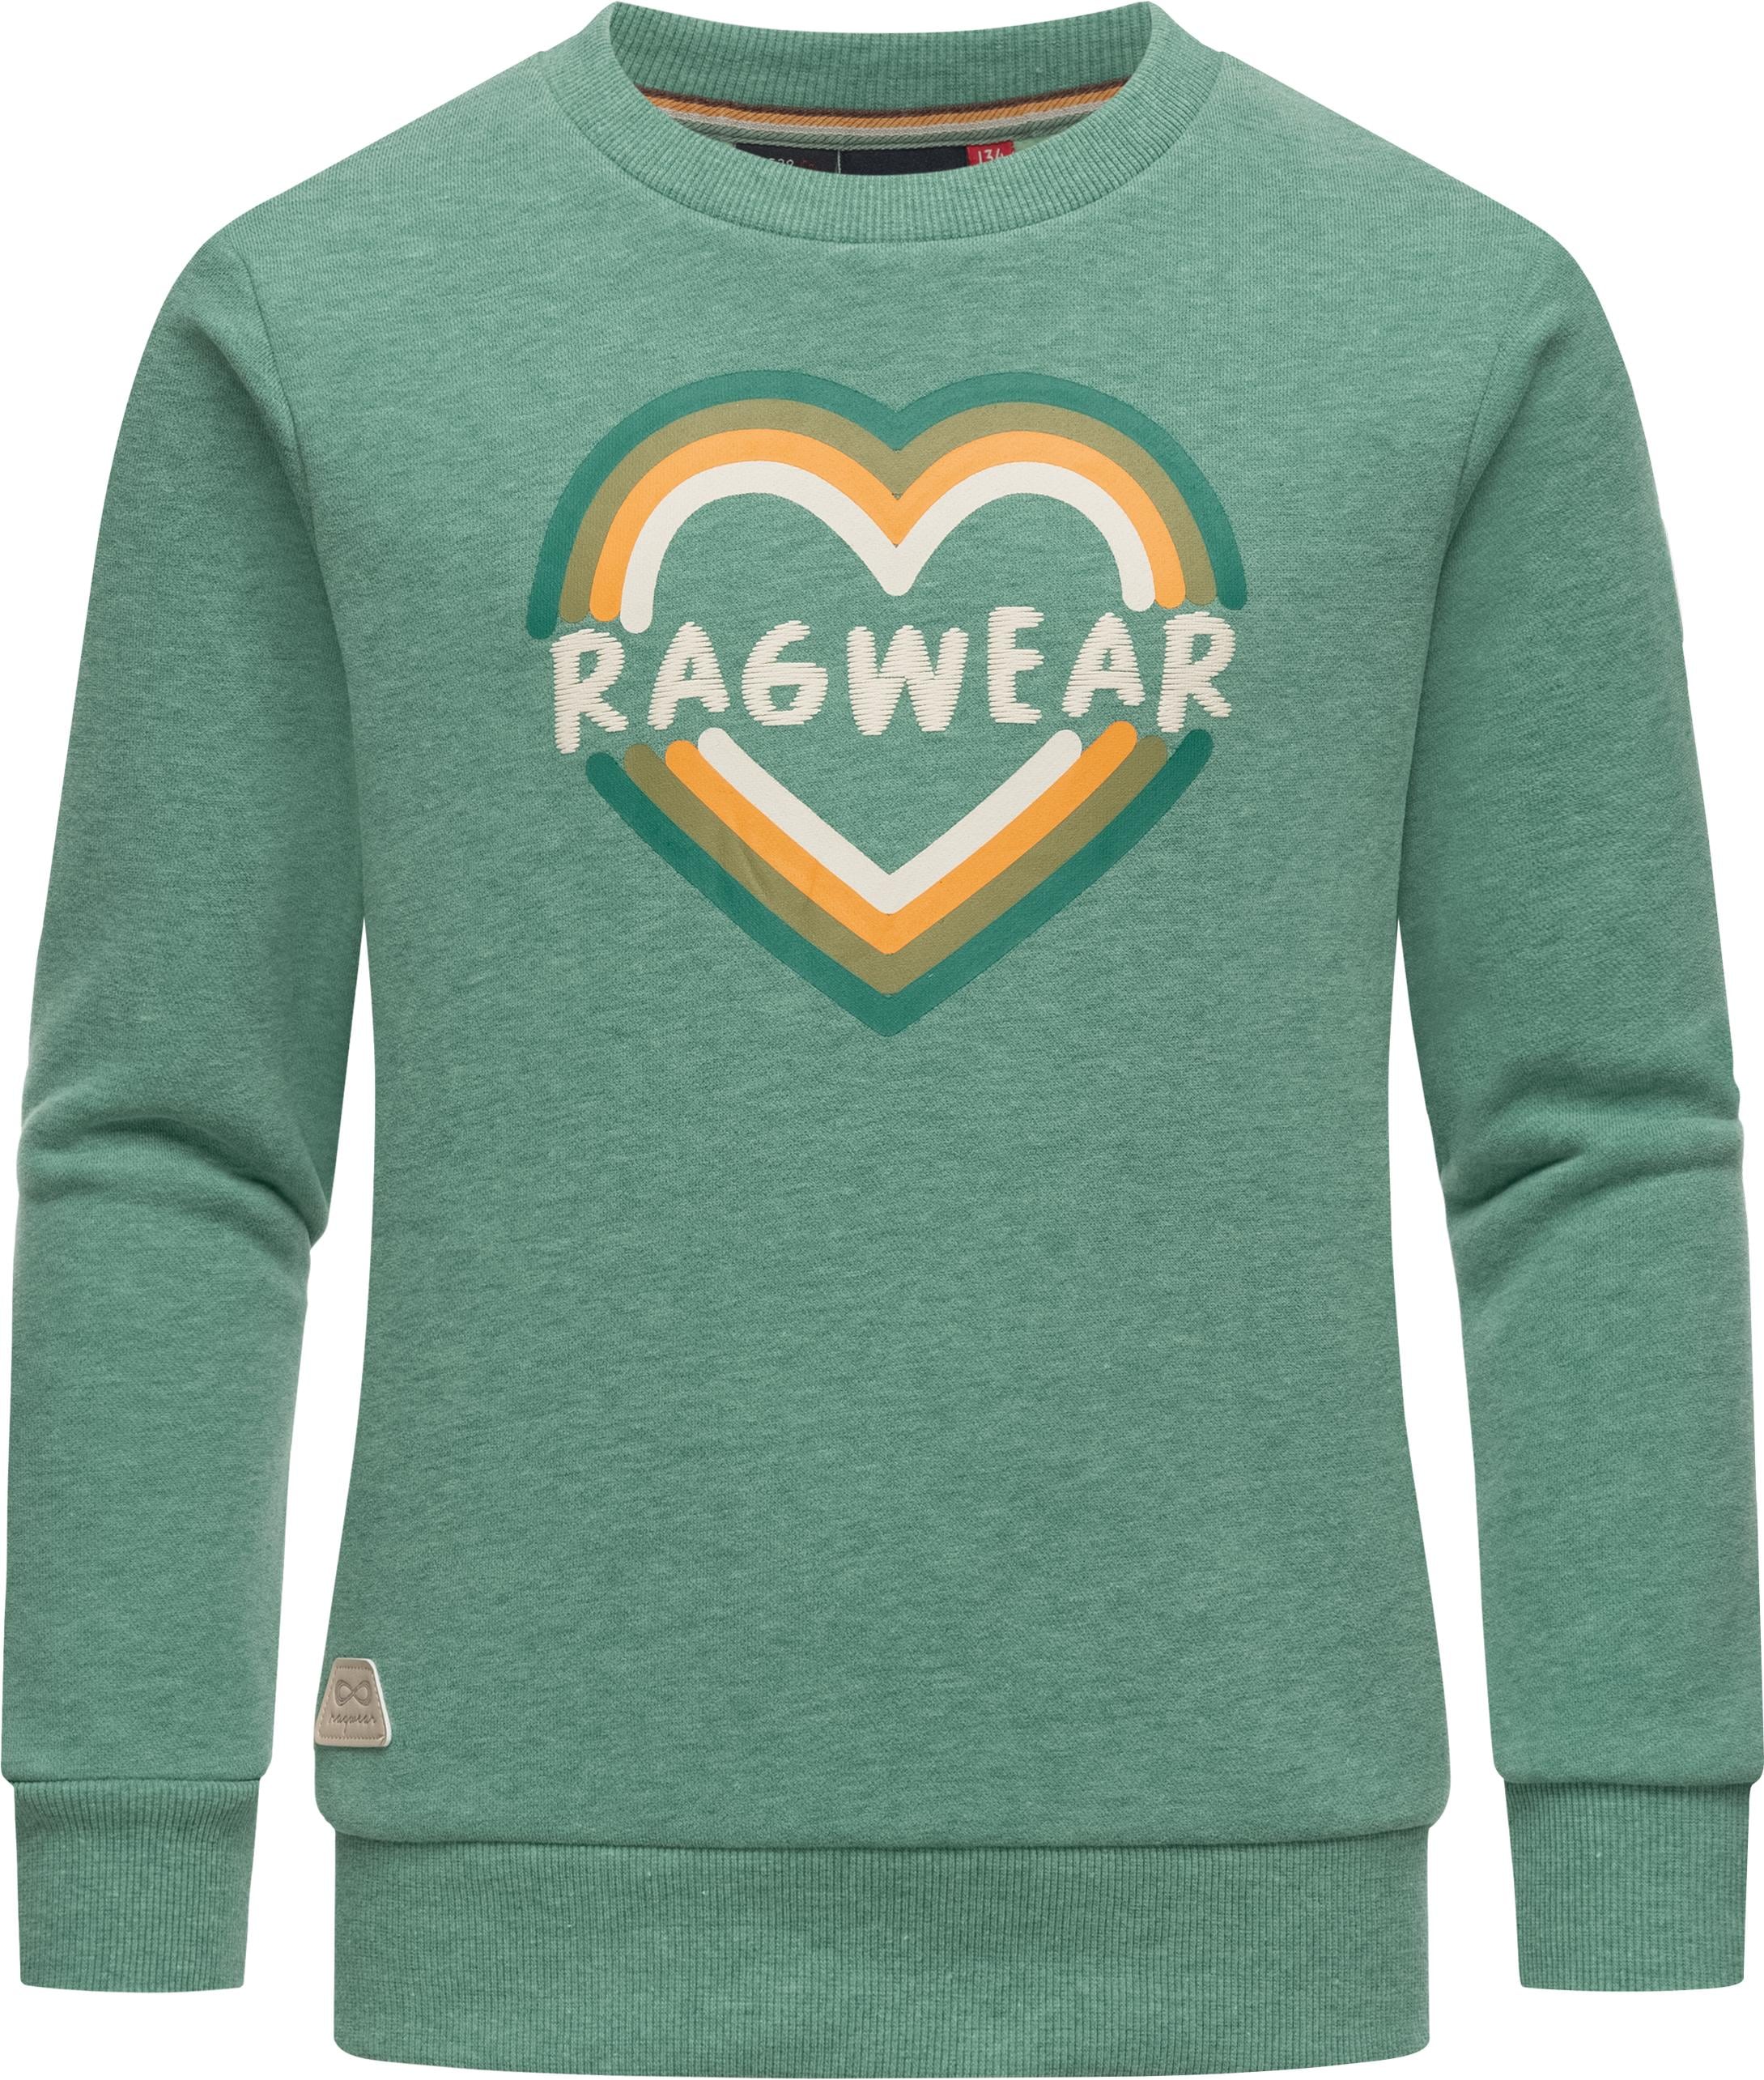 Mädchen Sweater stylisches Logo Ragwear »Evka BAUR online coolem kaufen | Print«, Sweatshirt mit Print